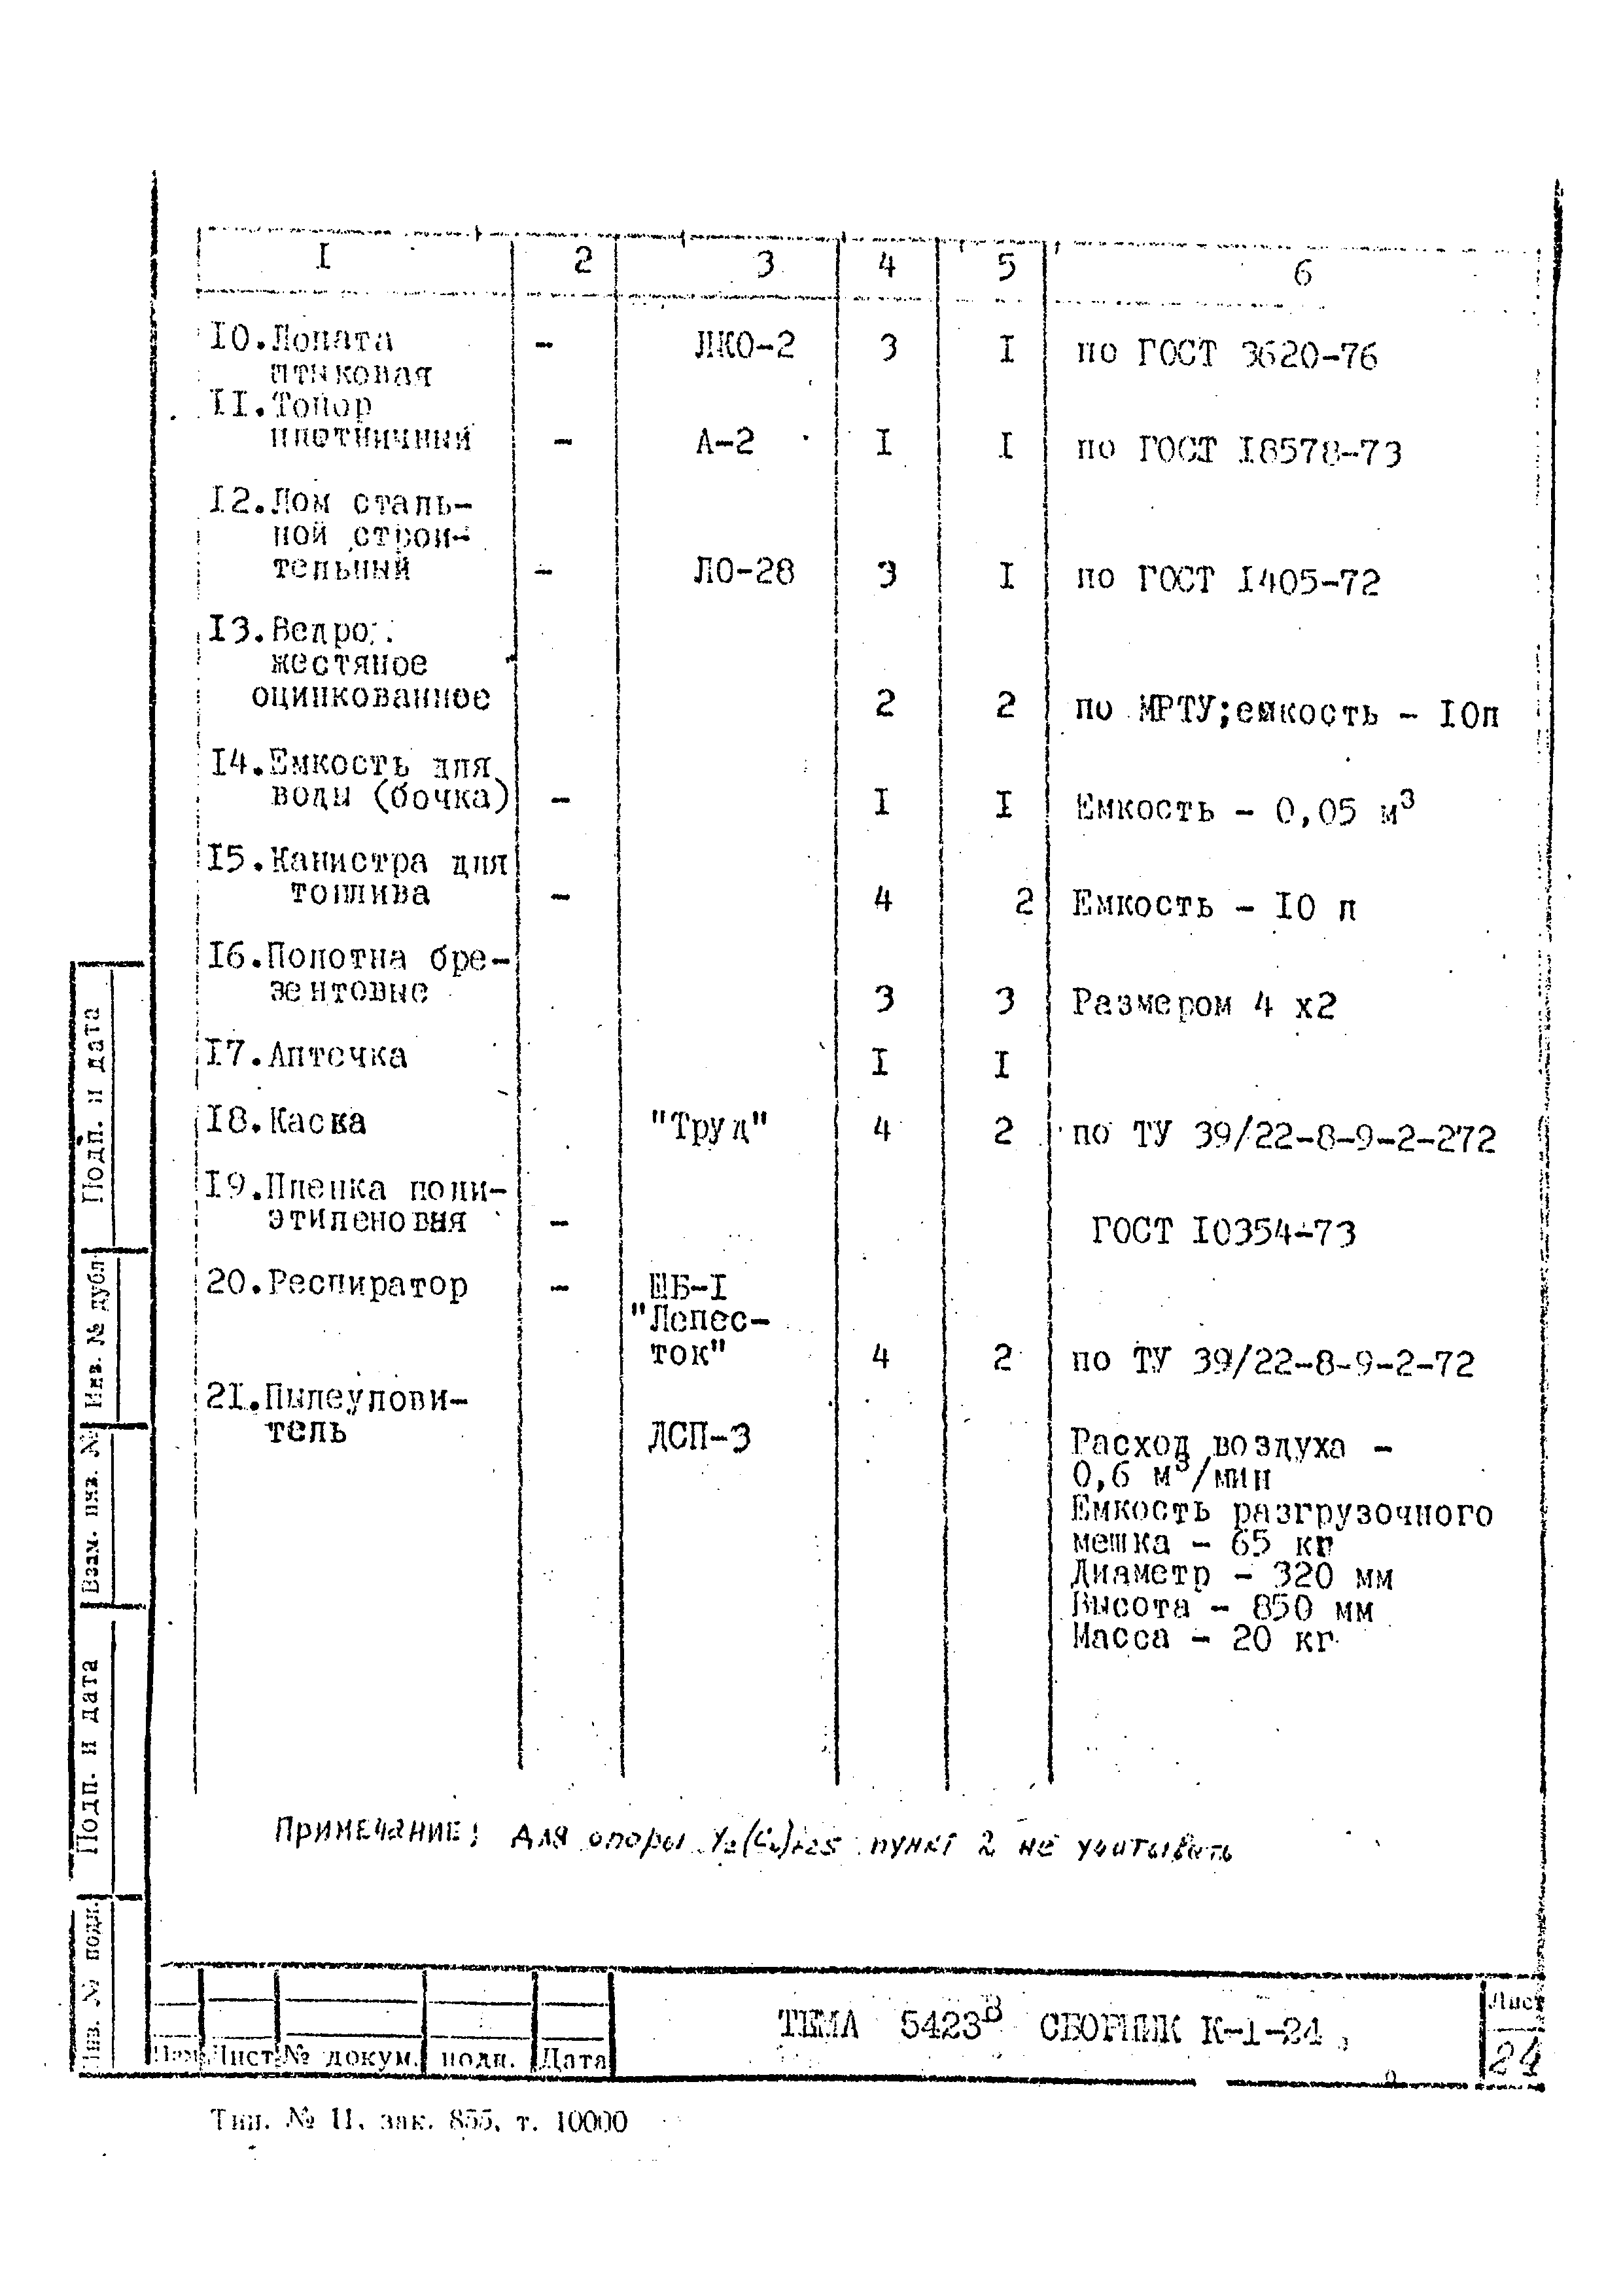 Технологическая карта К-1-24-5